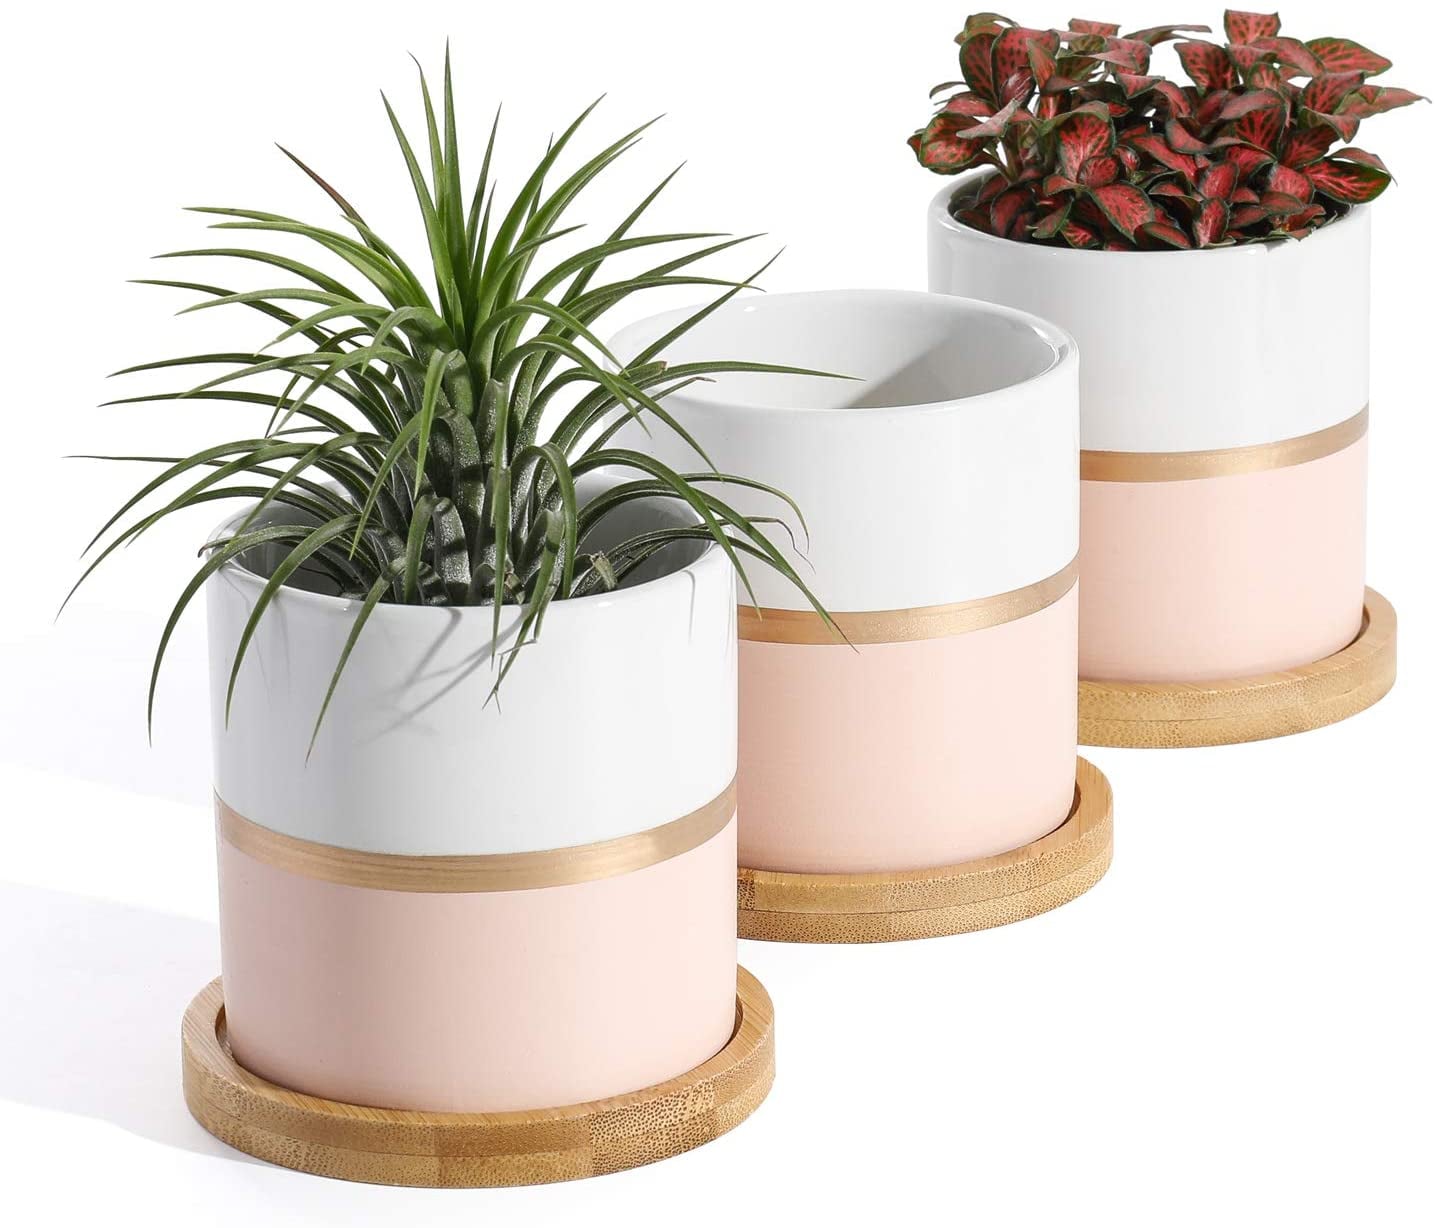 Details about   Set of 6 Ceramic Succulent Plant Pot Wooden Pattern Succulent Planter Container 